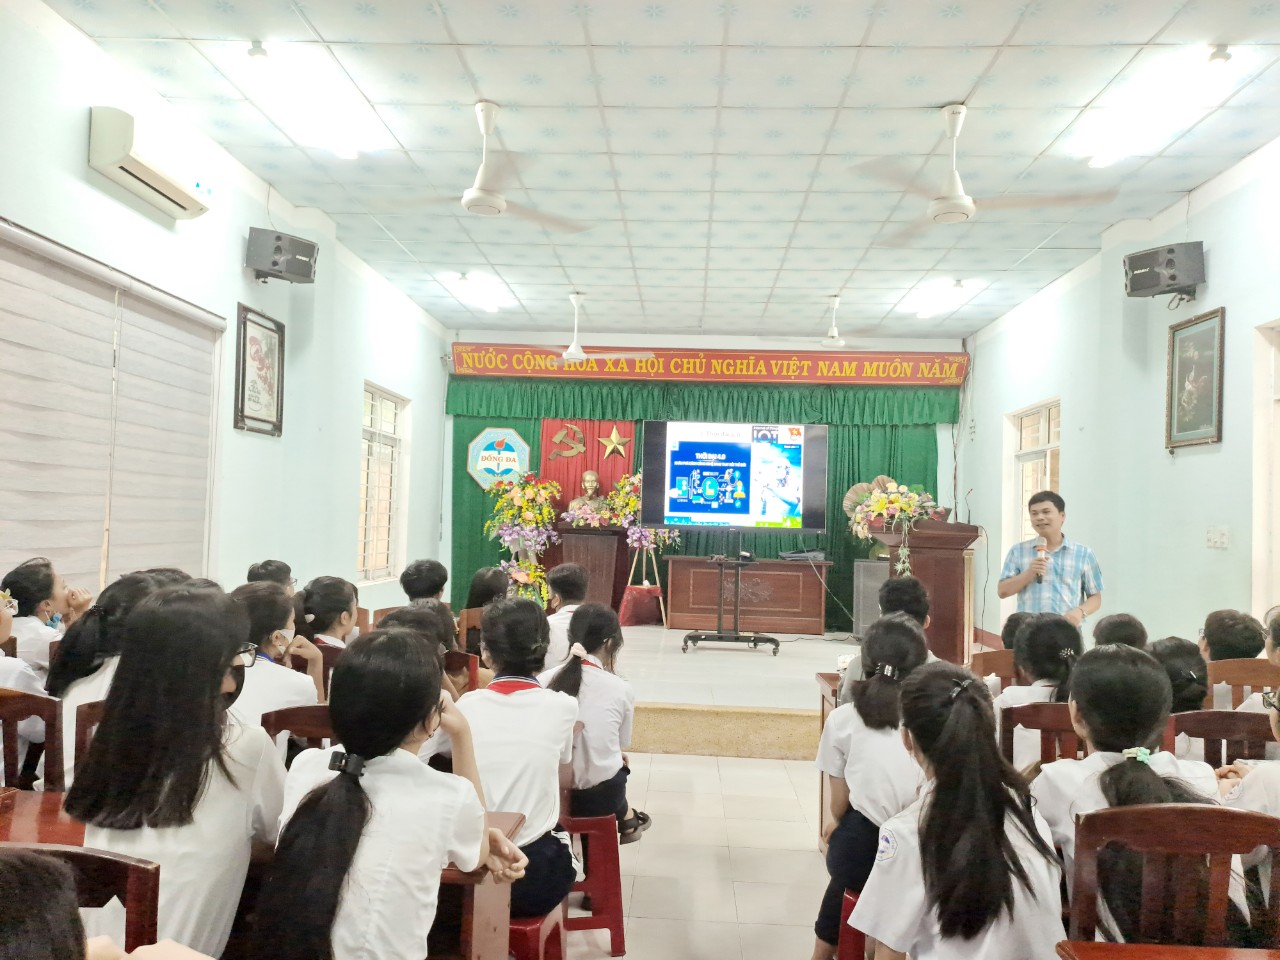 Tổ chức diễn đàn truyền thông “Kỹ năng sử dụng an toàn mạng” cho 300 em học sinh Trường Tiểu học Ngô Quyền và THCS Đống Đa, thành phố Quy Nhơn.